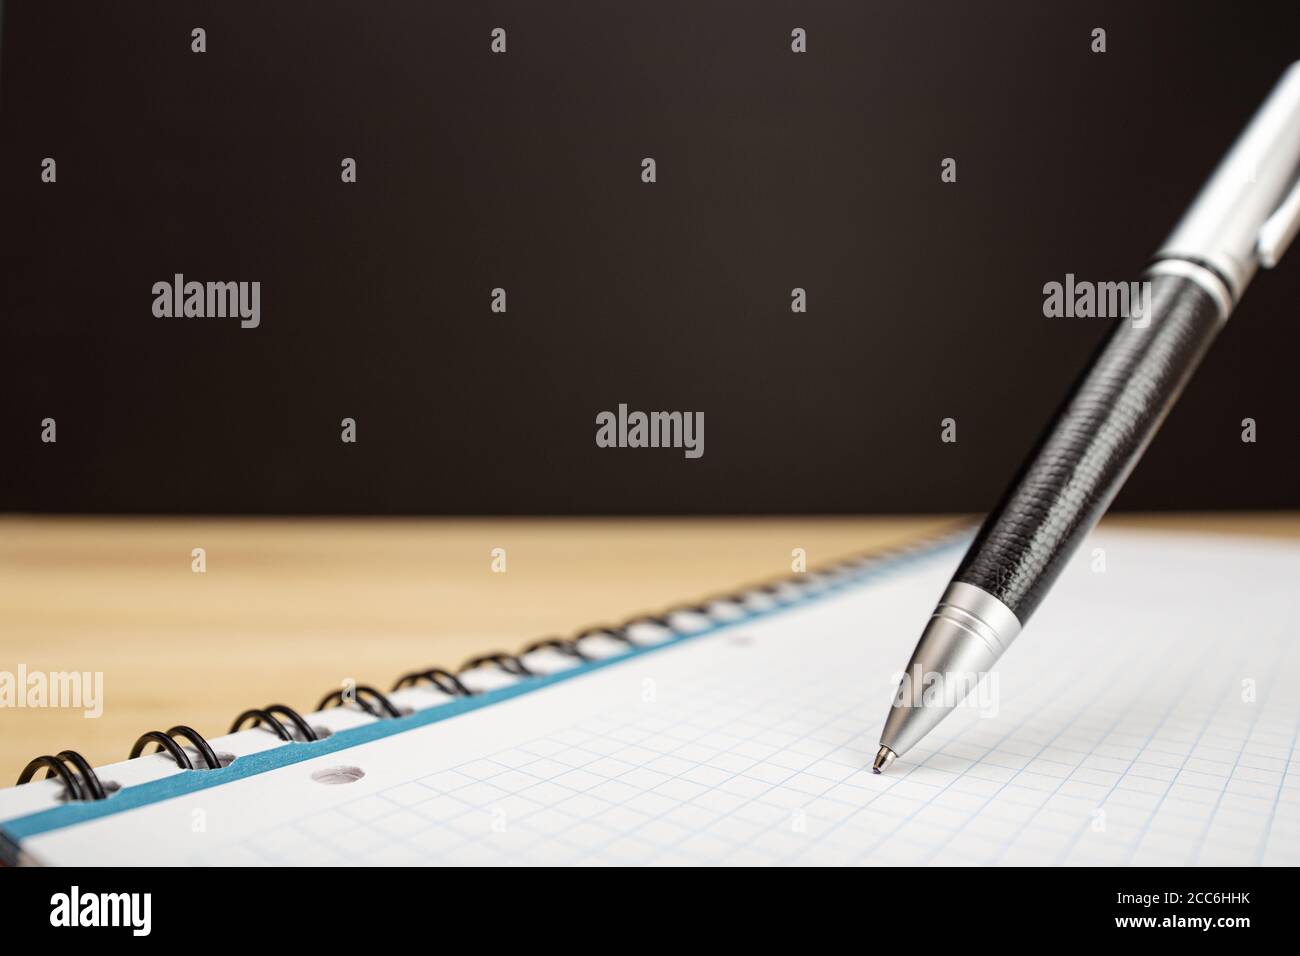 Gros plan sur le stylo à bille et l'ordinateur portable. Concept d'idée, de travail, d'apprentissage ou d'écriture. Copier l'espace Banque D'Images